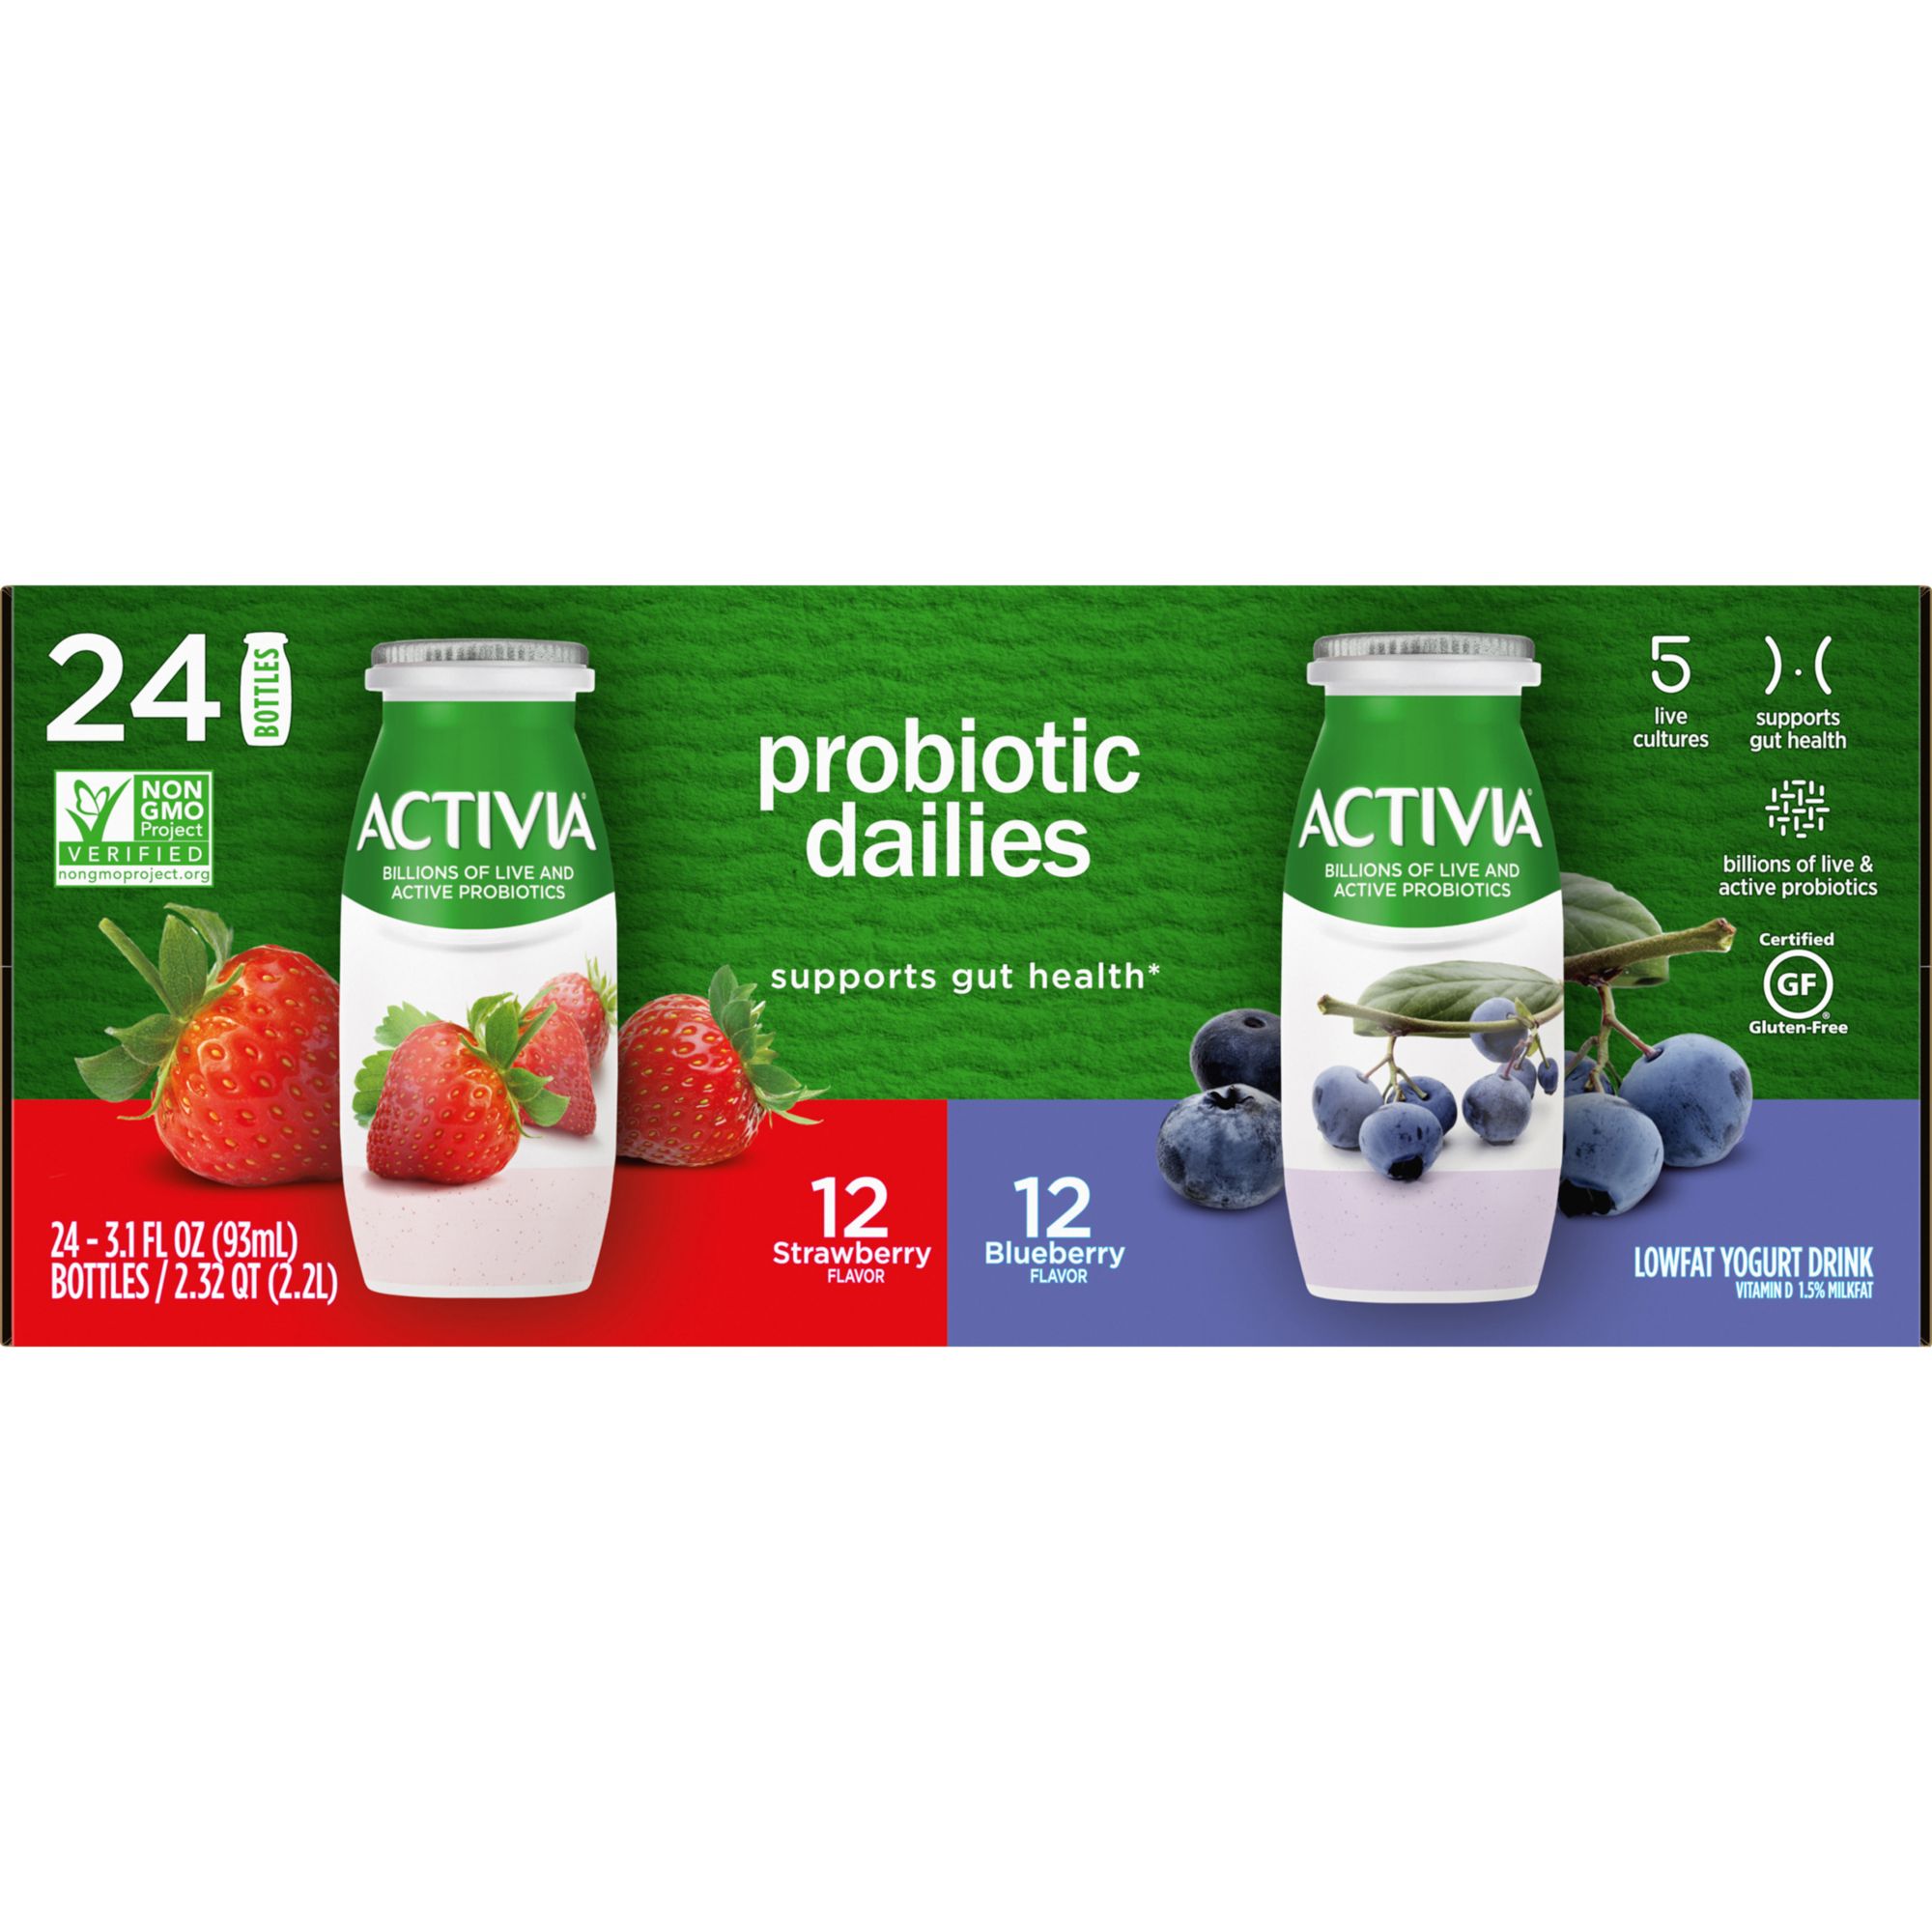 Dannon Activia Probiotic Yogurt Vanilla - 4 ct